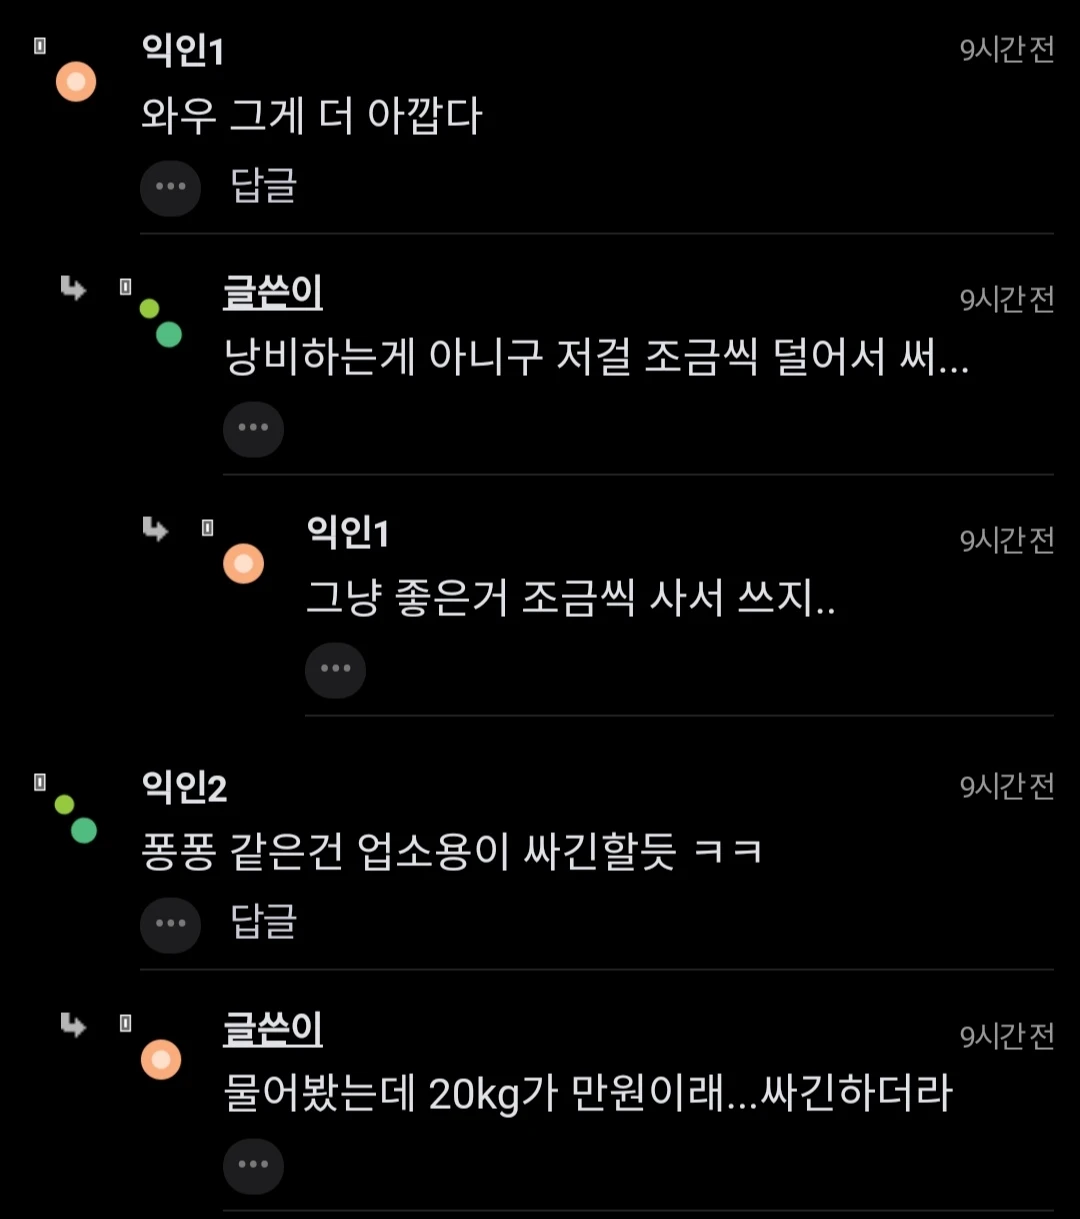 ""남친이 가성비에 미쳤음... 충격이다"".jpg